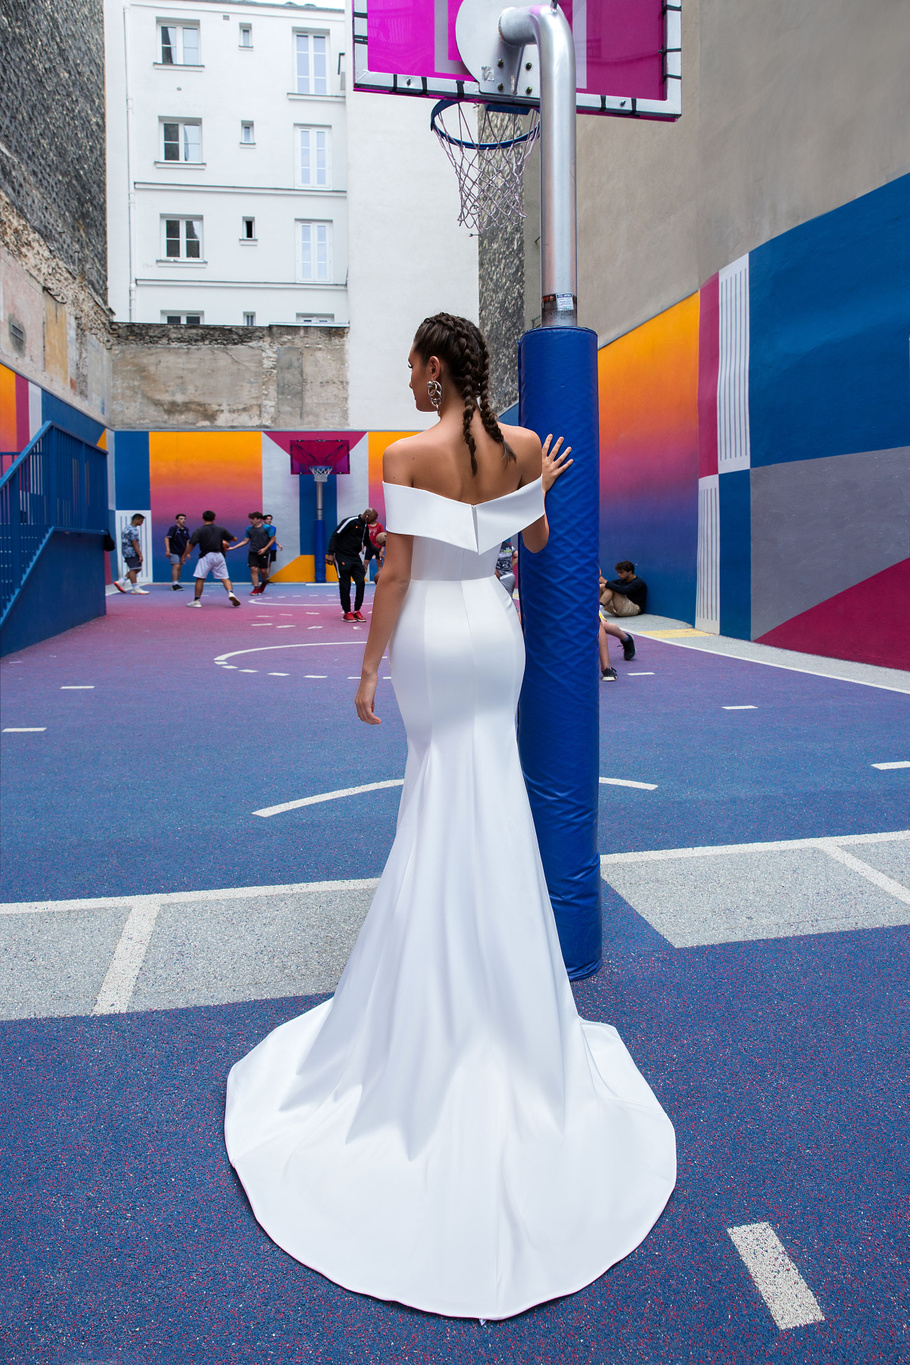 Купить свадебное платье «Вилдин» Кристал Дизайн из коллекции Париж 2019 в Ярославле недорого